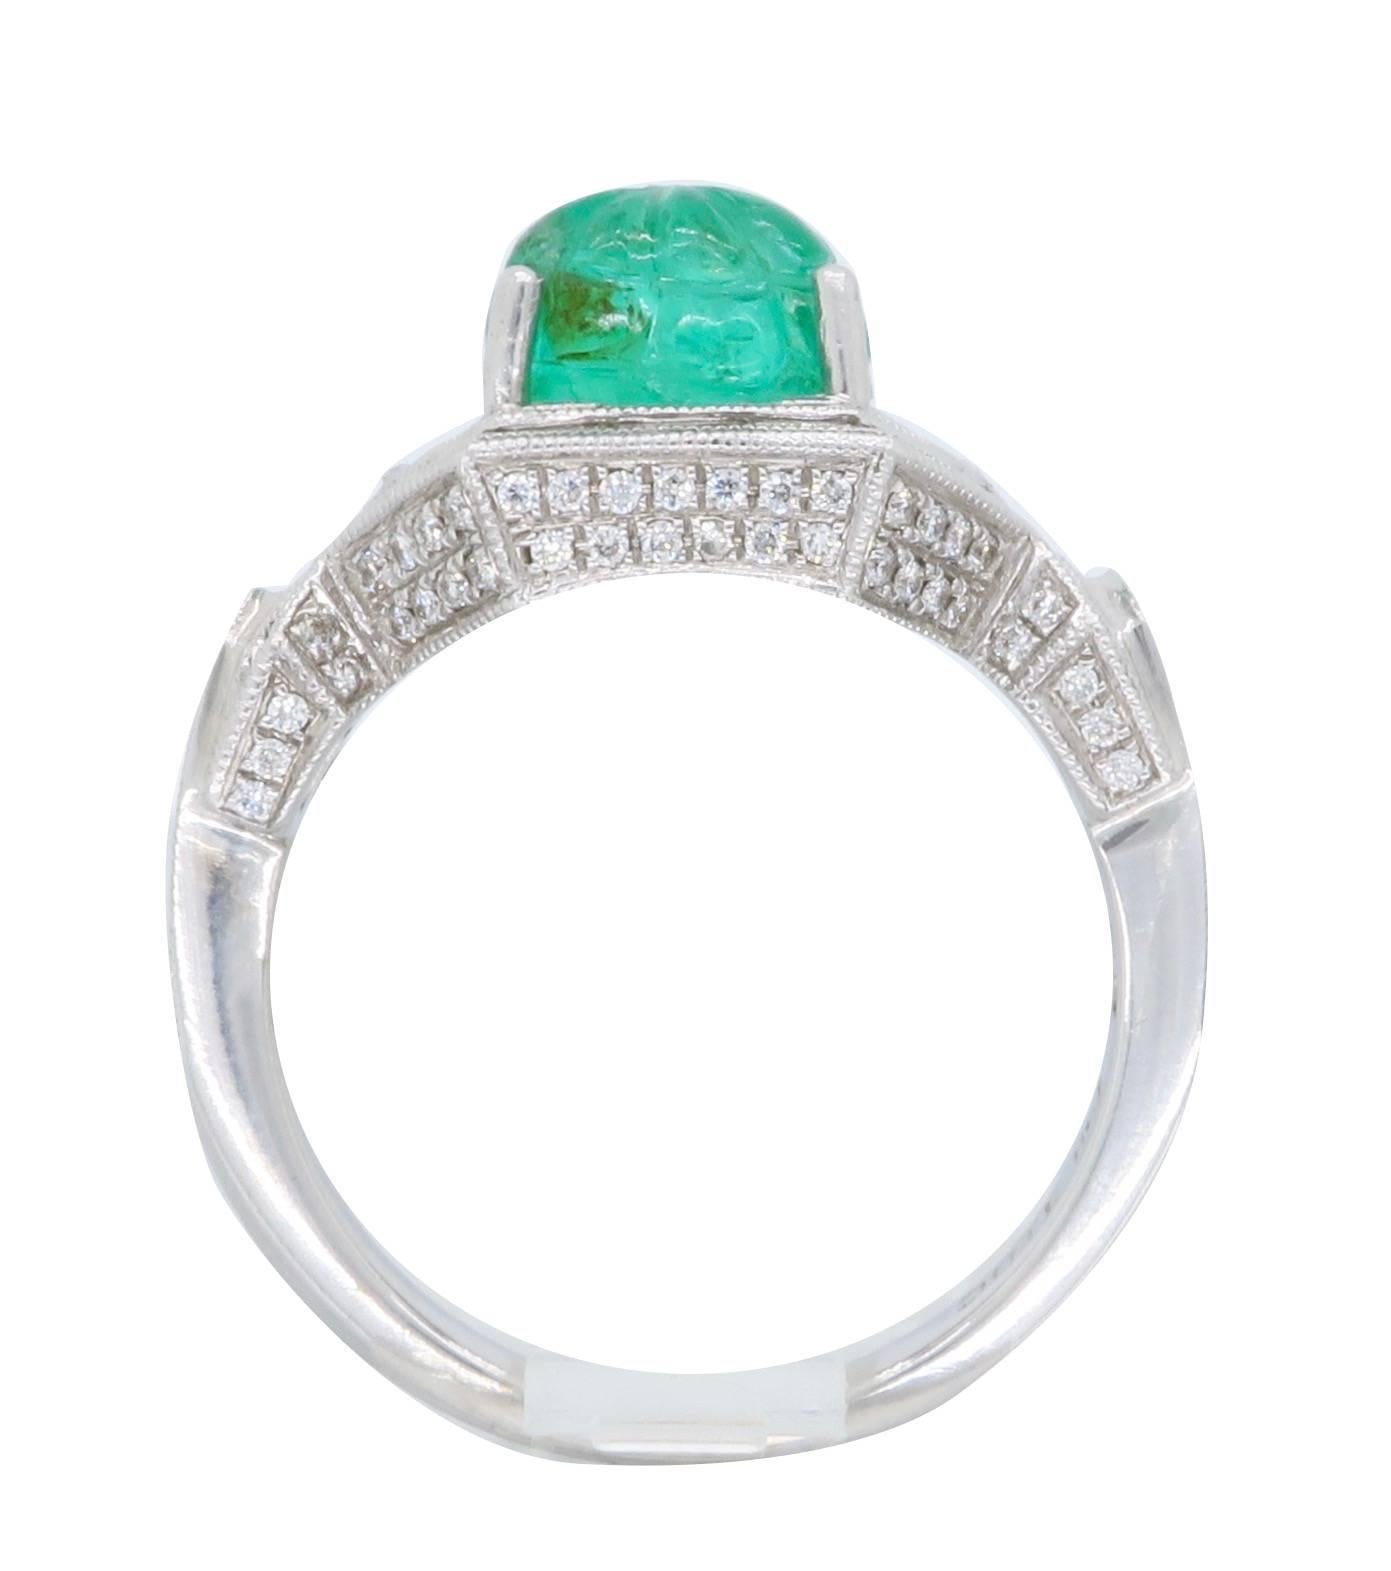 Women's 18k White Gold Diamond & Carved Emerald Ring